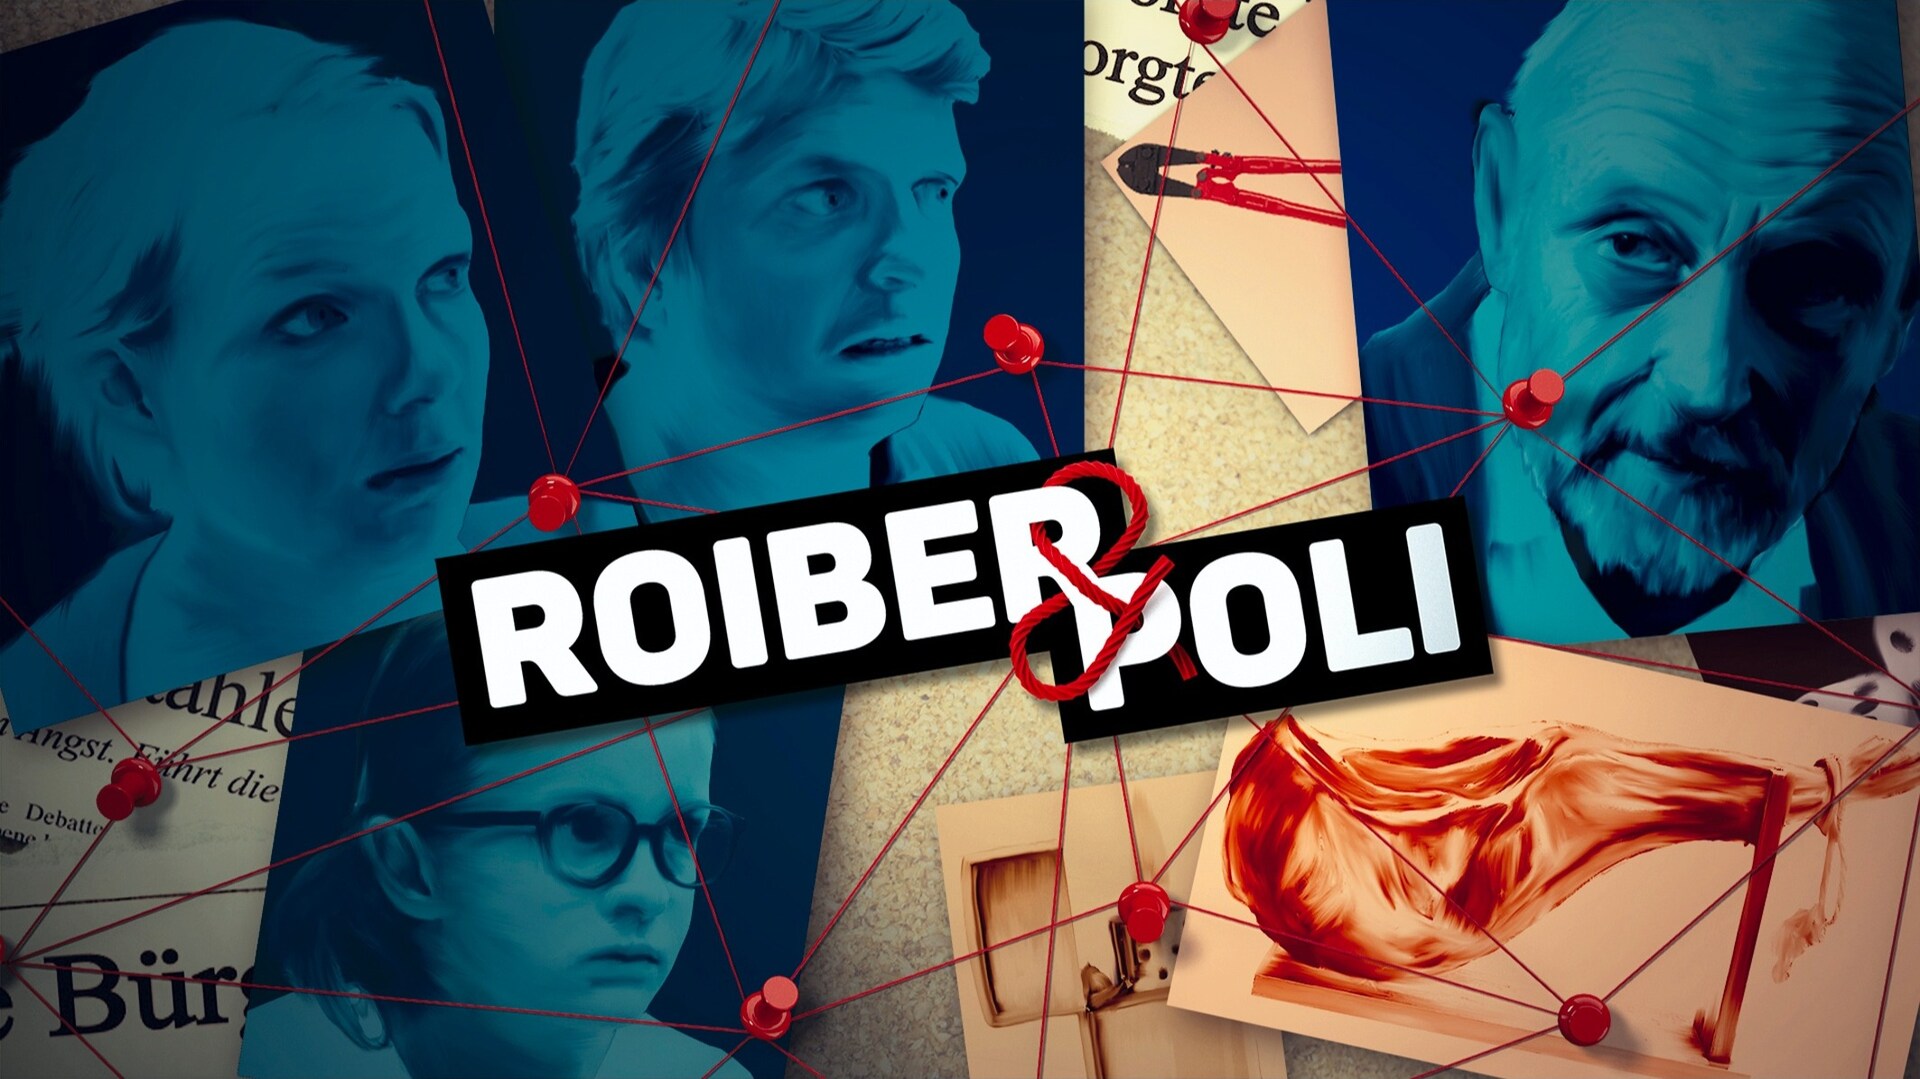 Roiber & Poli